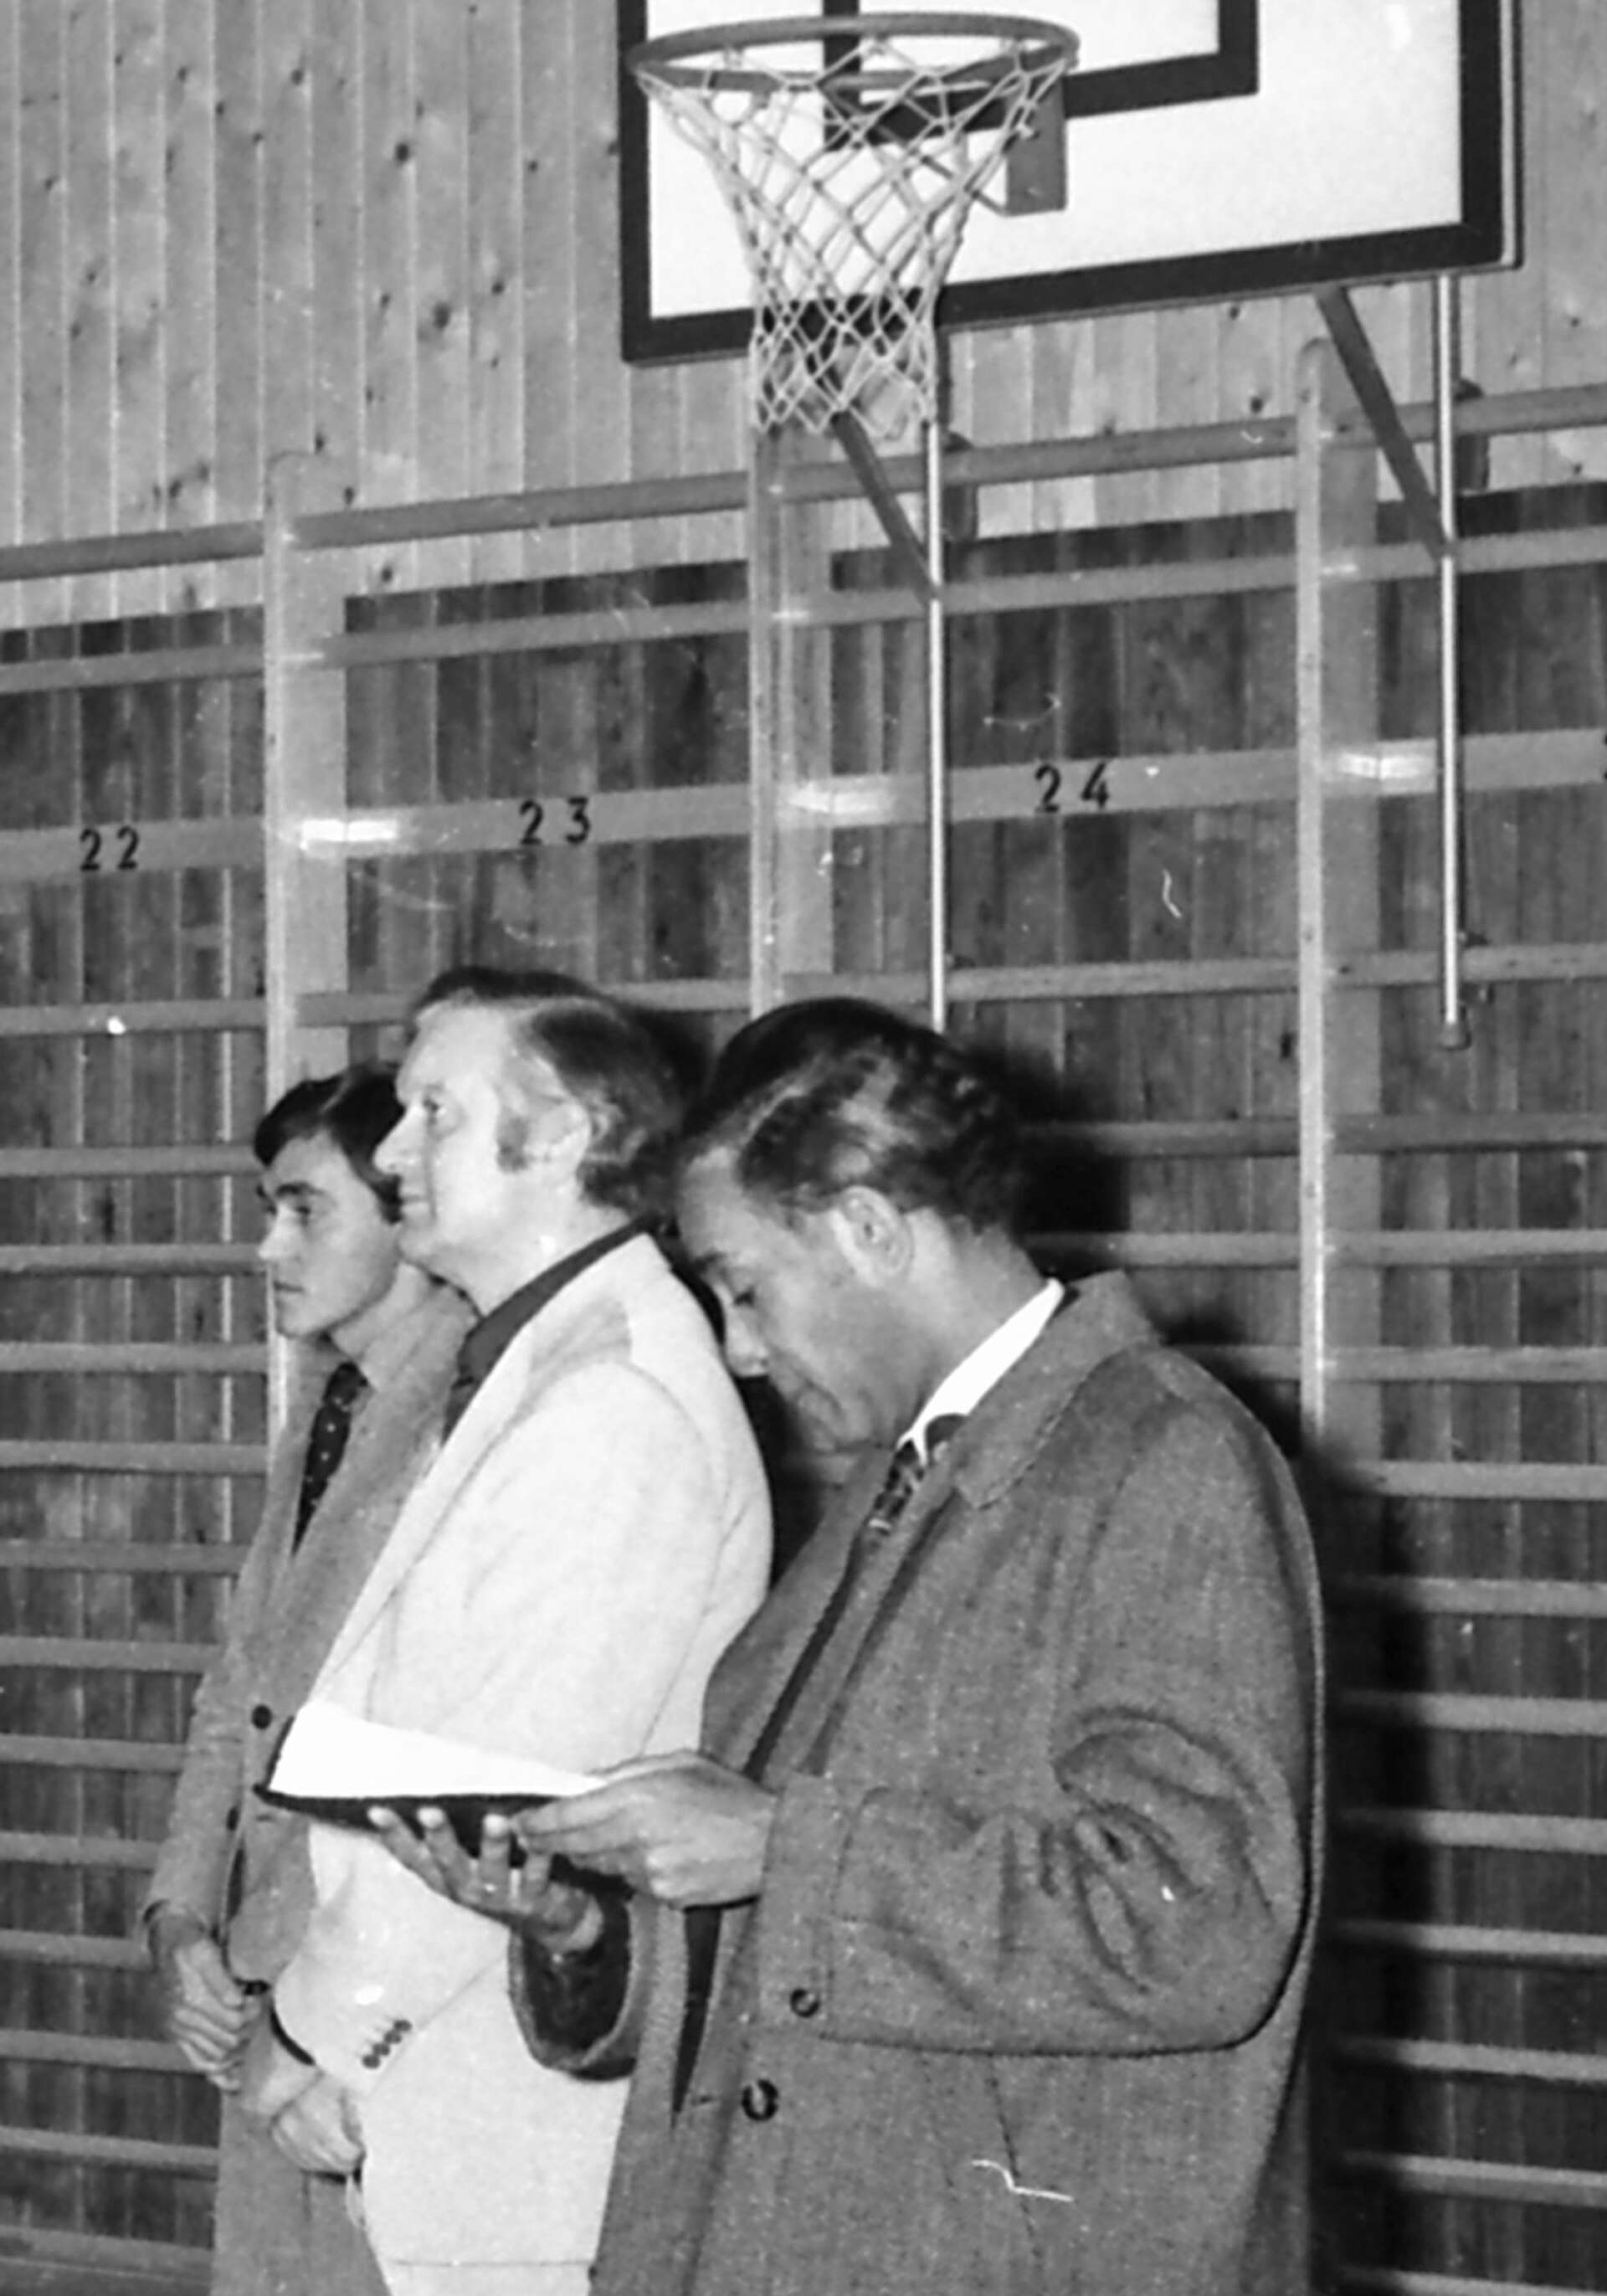 Matchur och basketbollkorg är kanske inte vad man förknippar med Jan Sparring, som ses i mitten på bilden. Den tidigare operasångaren blev frälst och övergick till en religiös repertoar. Redan hösten 1974 framträdde Jan Sparring i Tegnérhallen. 